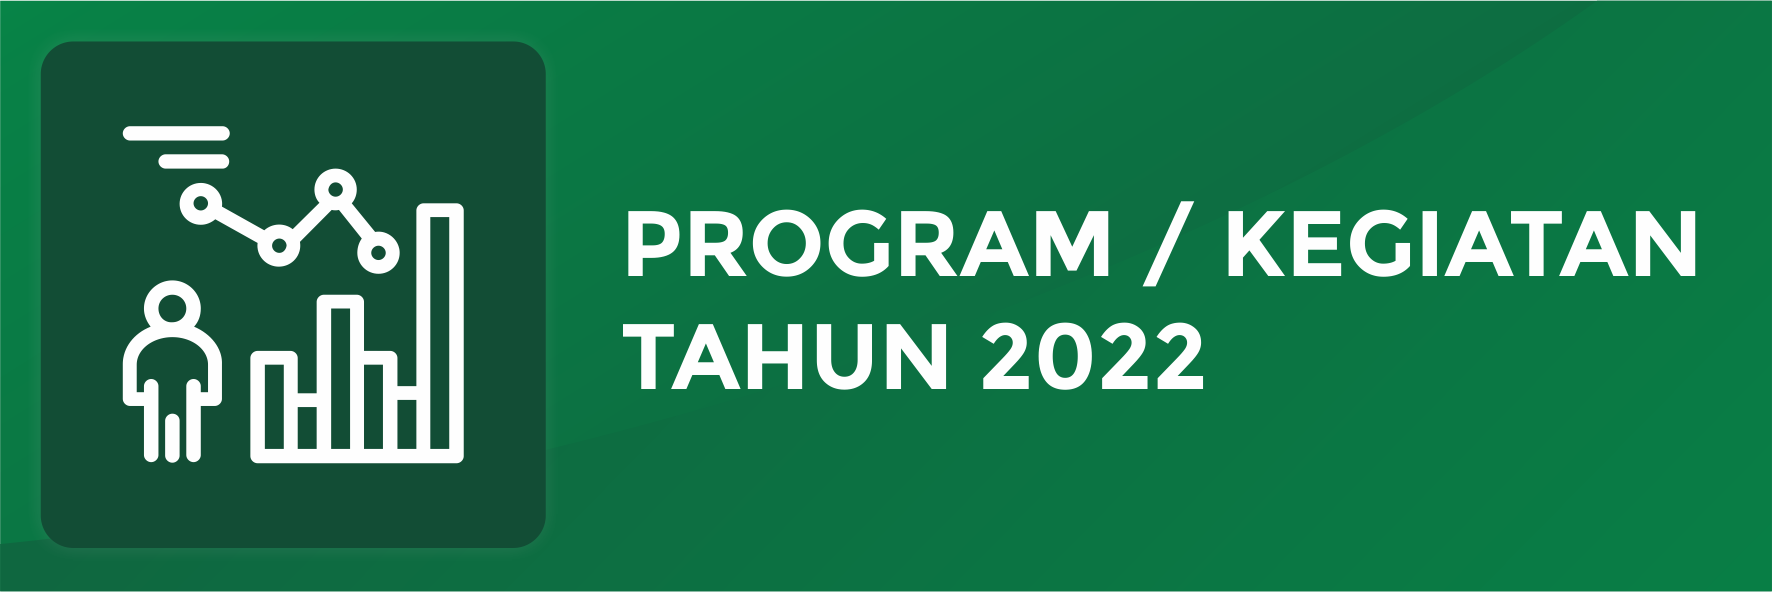 Program Kegiatan 2022